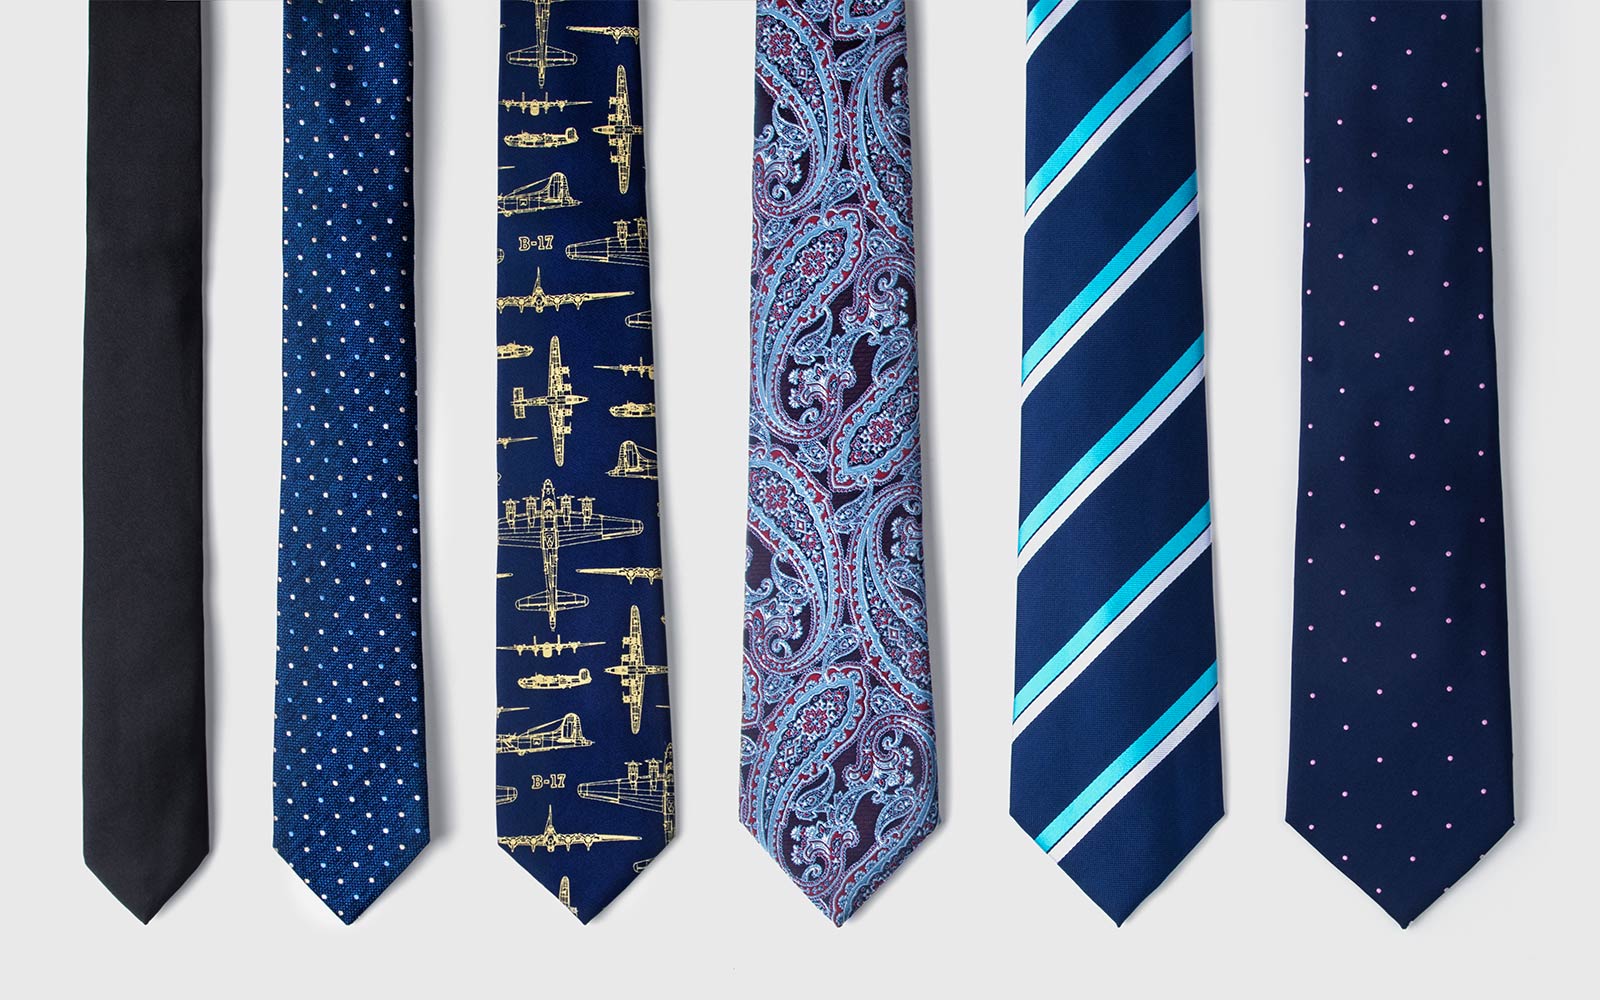 Αποτέλεσμα εικόνας για necktie fashion 2018